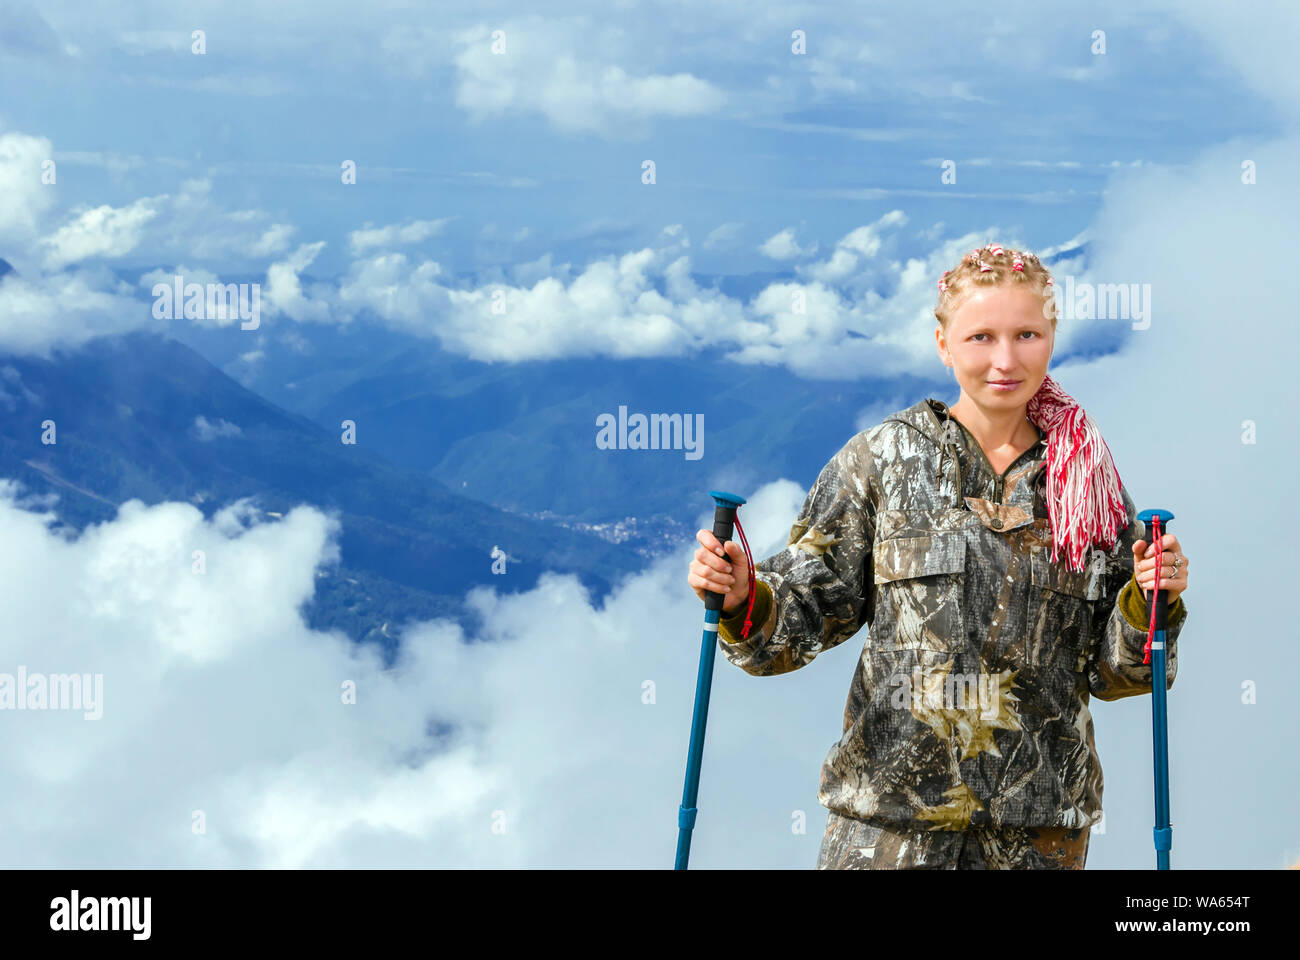 Giovane donna bionda in escursionismo vestiti con pali trekking in montagna su uno sfondo di nuvole Foto Stock